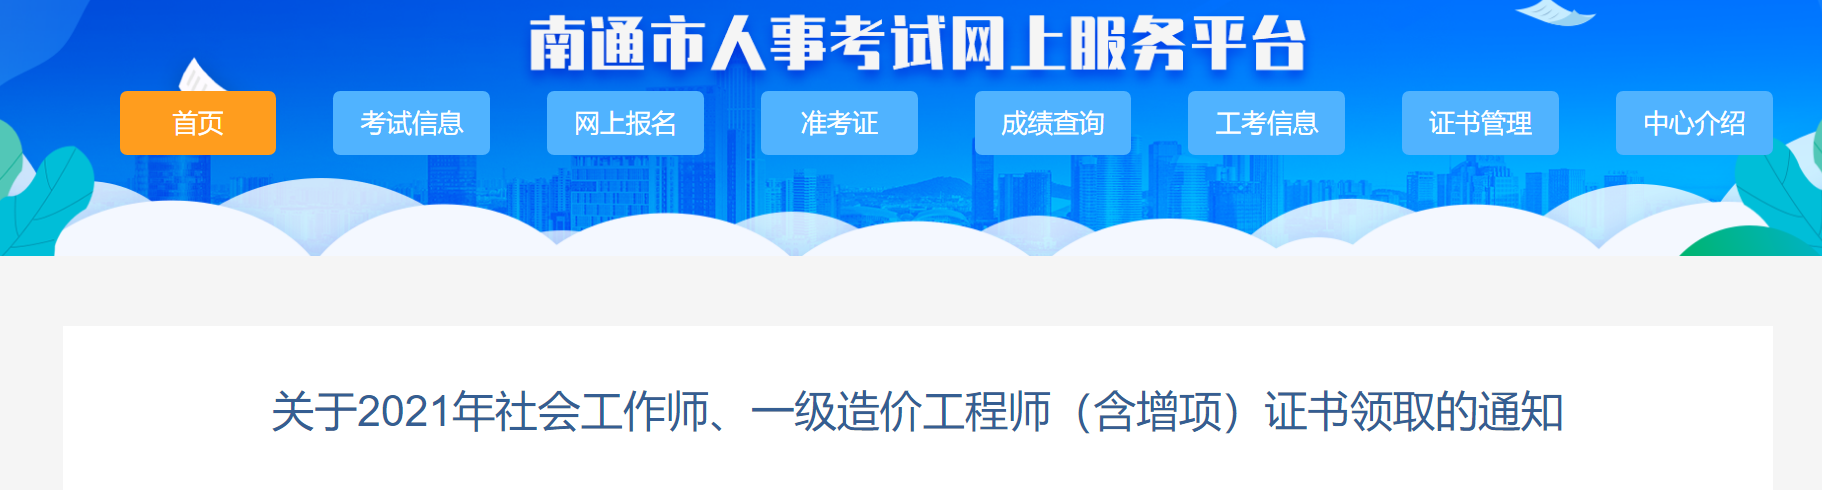 2021年江苏南通社会工作师证书领取通知